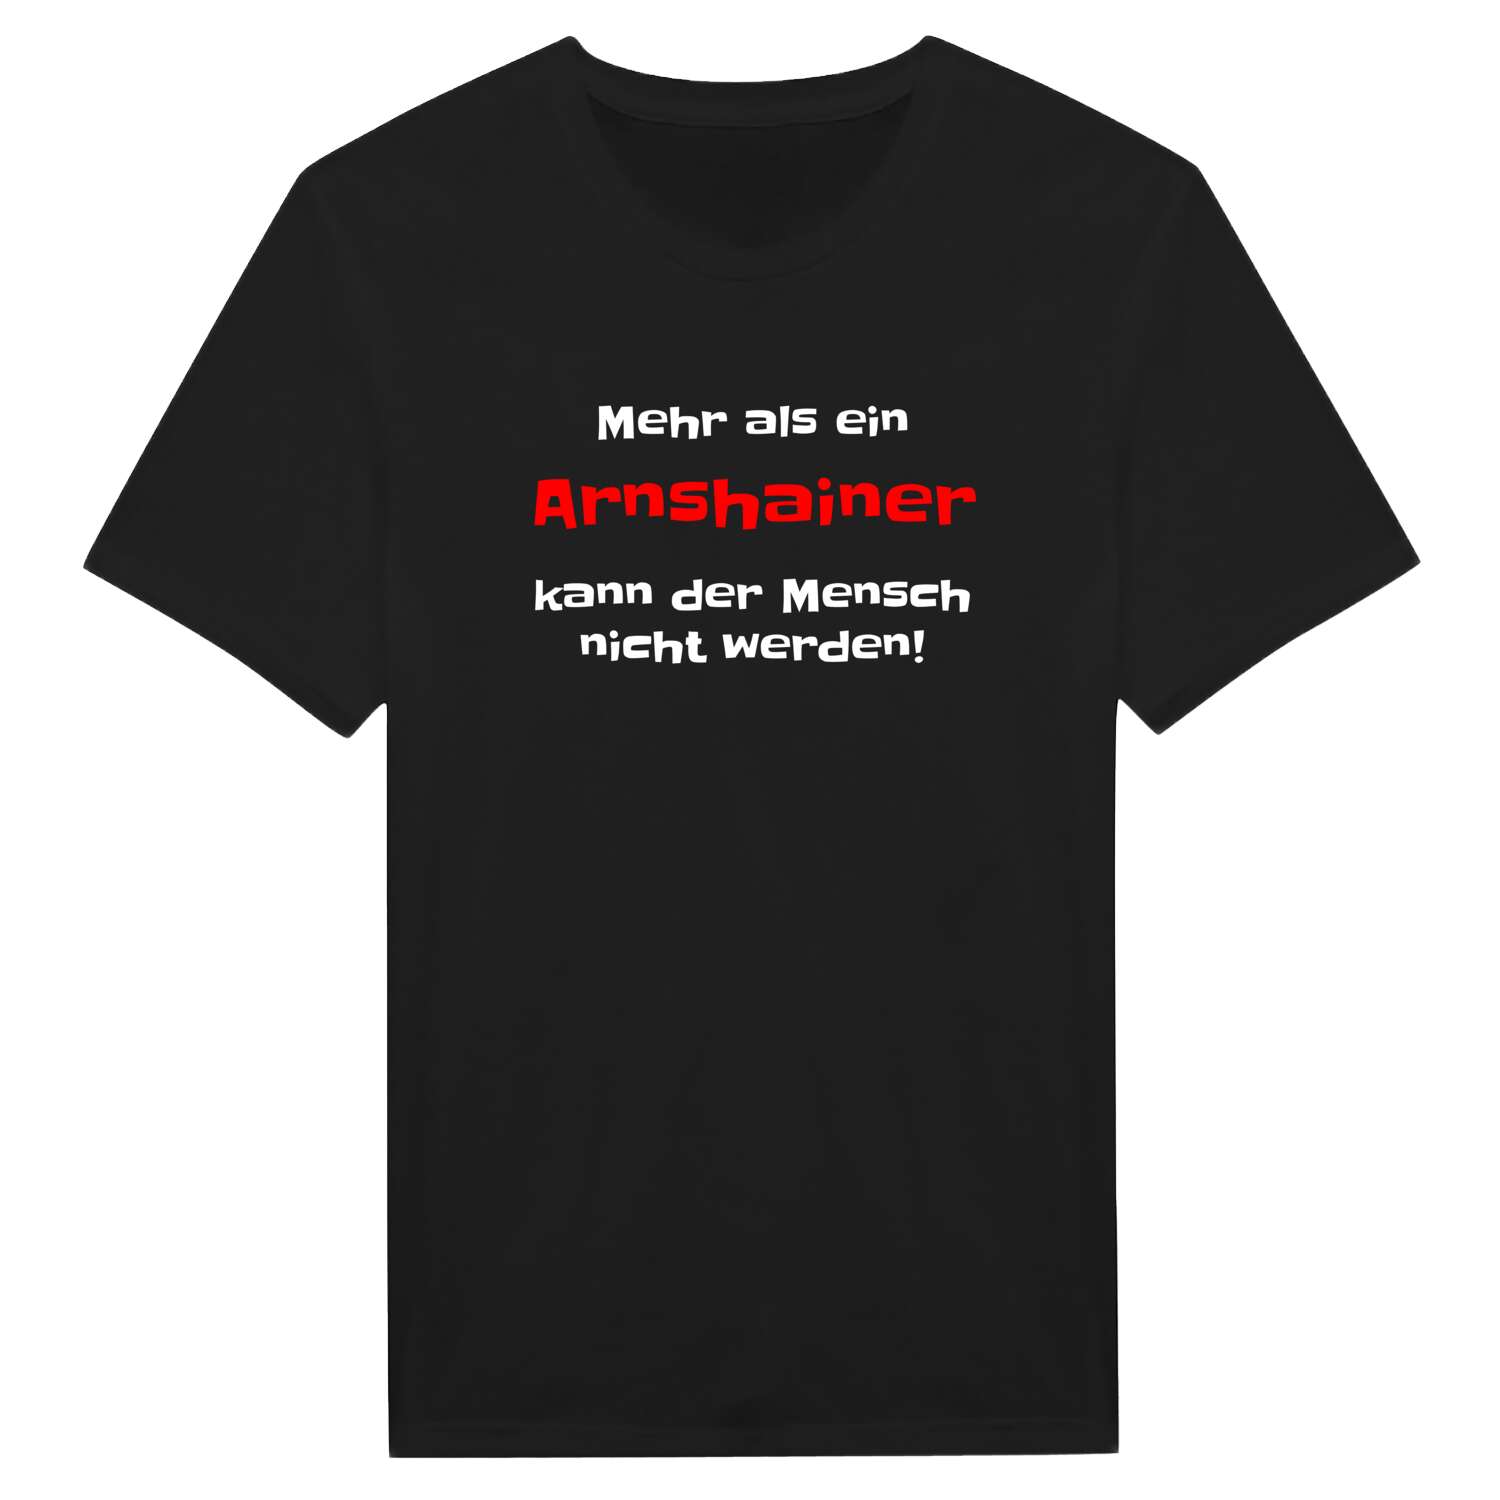 Arnshain T-Shirt »Mehr als ein«